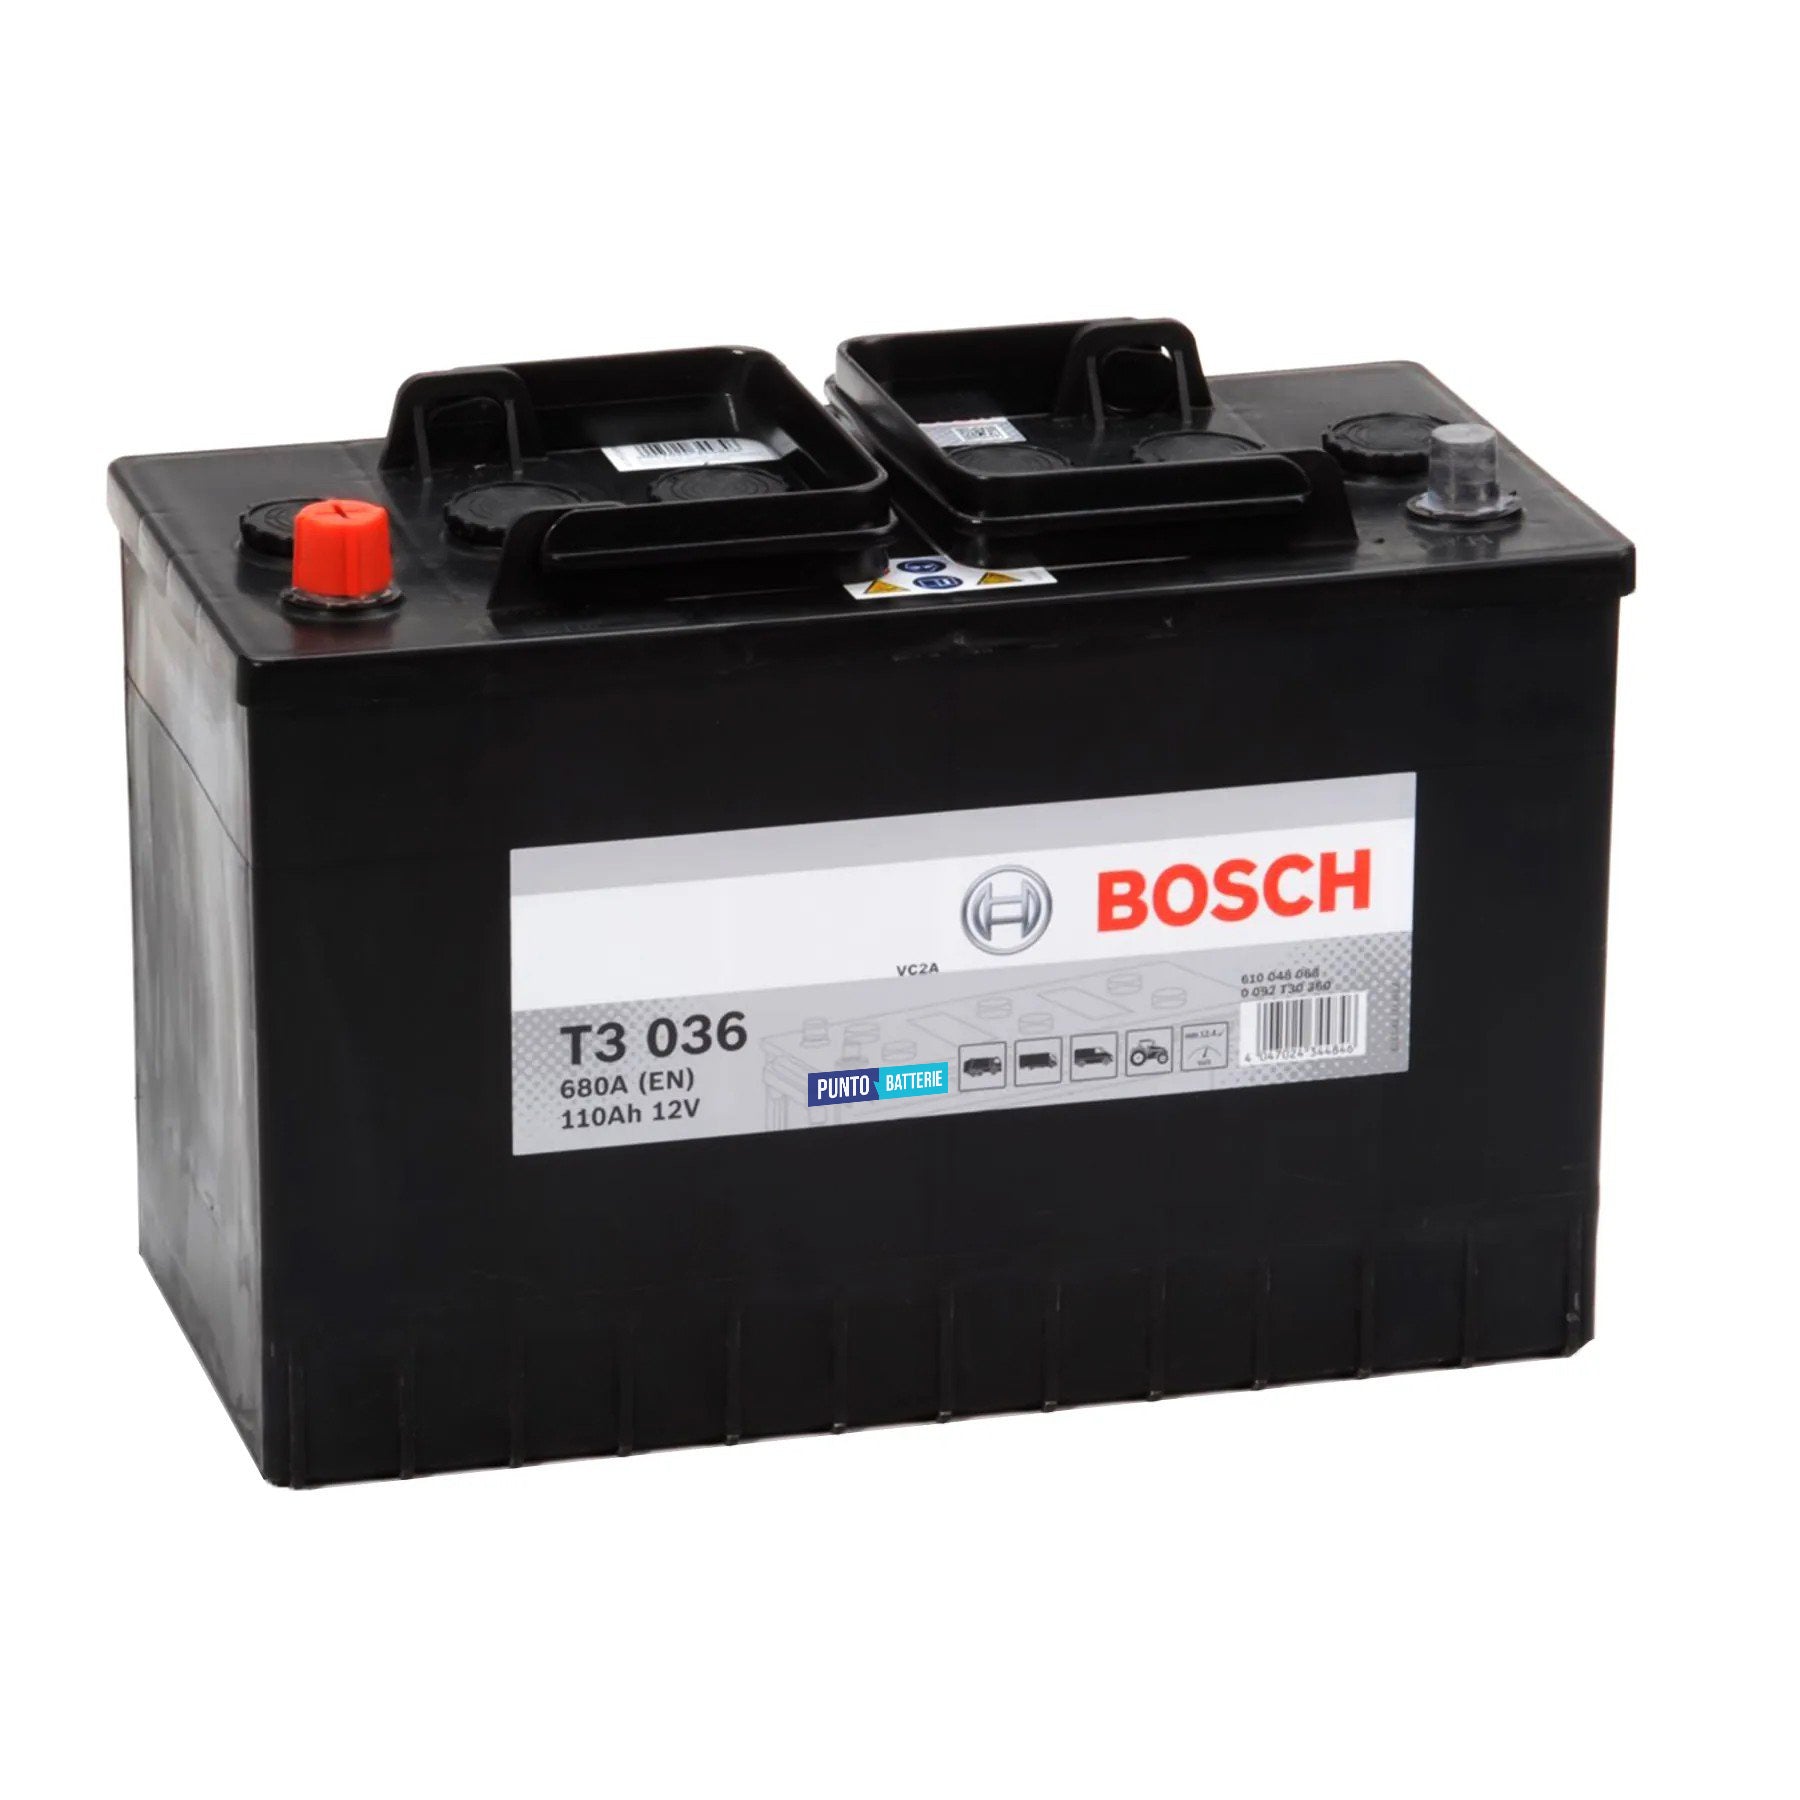 Batteria originale Bosch T3 T3036, dimensioni 346 x 173 x 236, polo positivo a sinistra, 12 volt, 110 amperora, 680 ampere. Batteria per camion e veicoli pesanti.